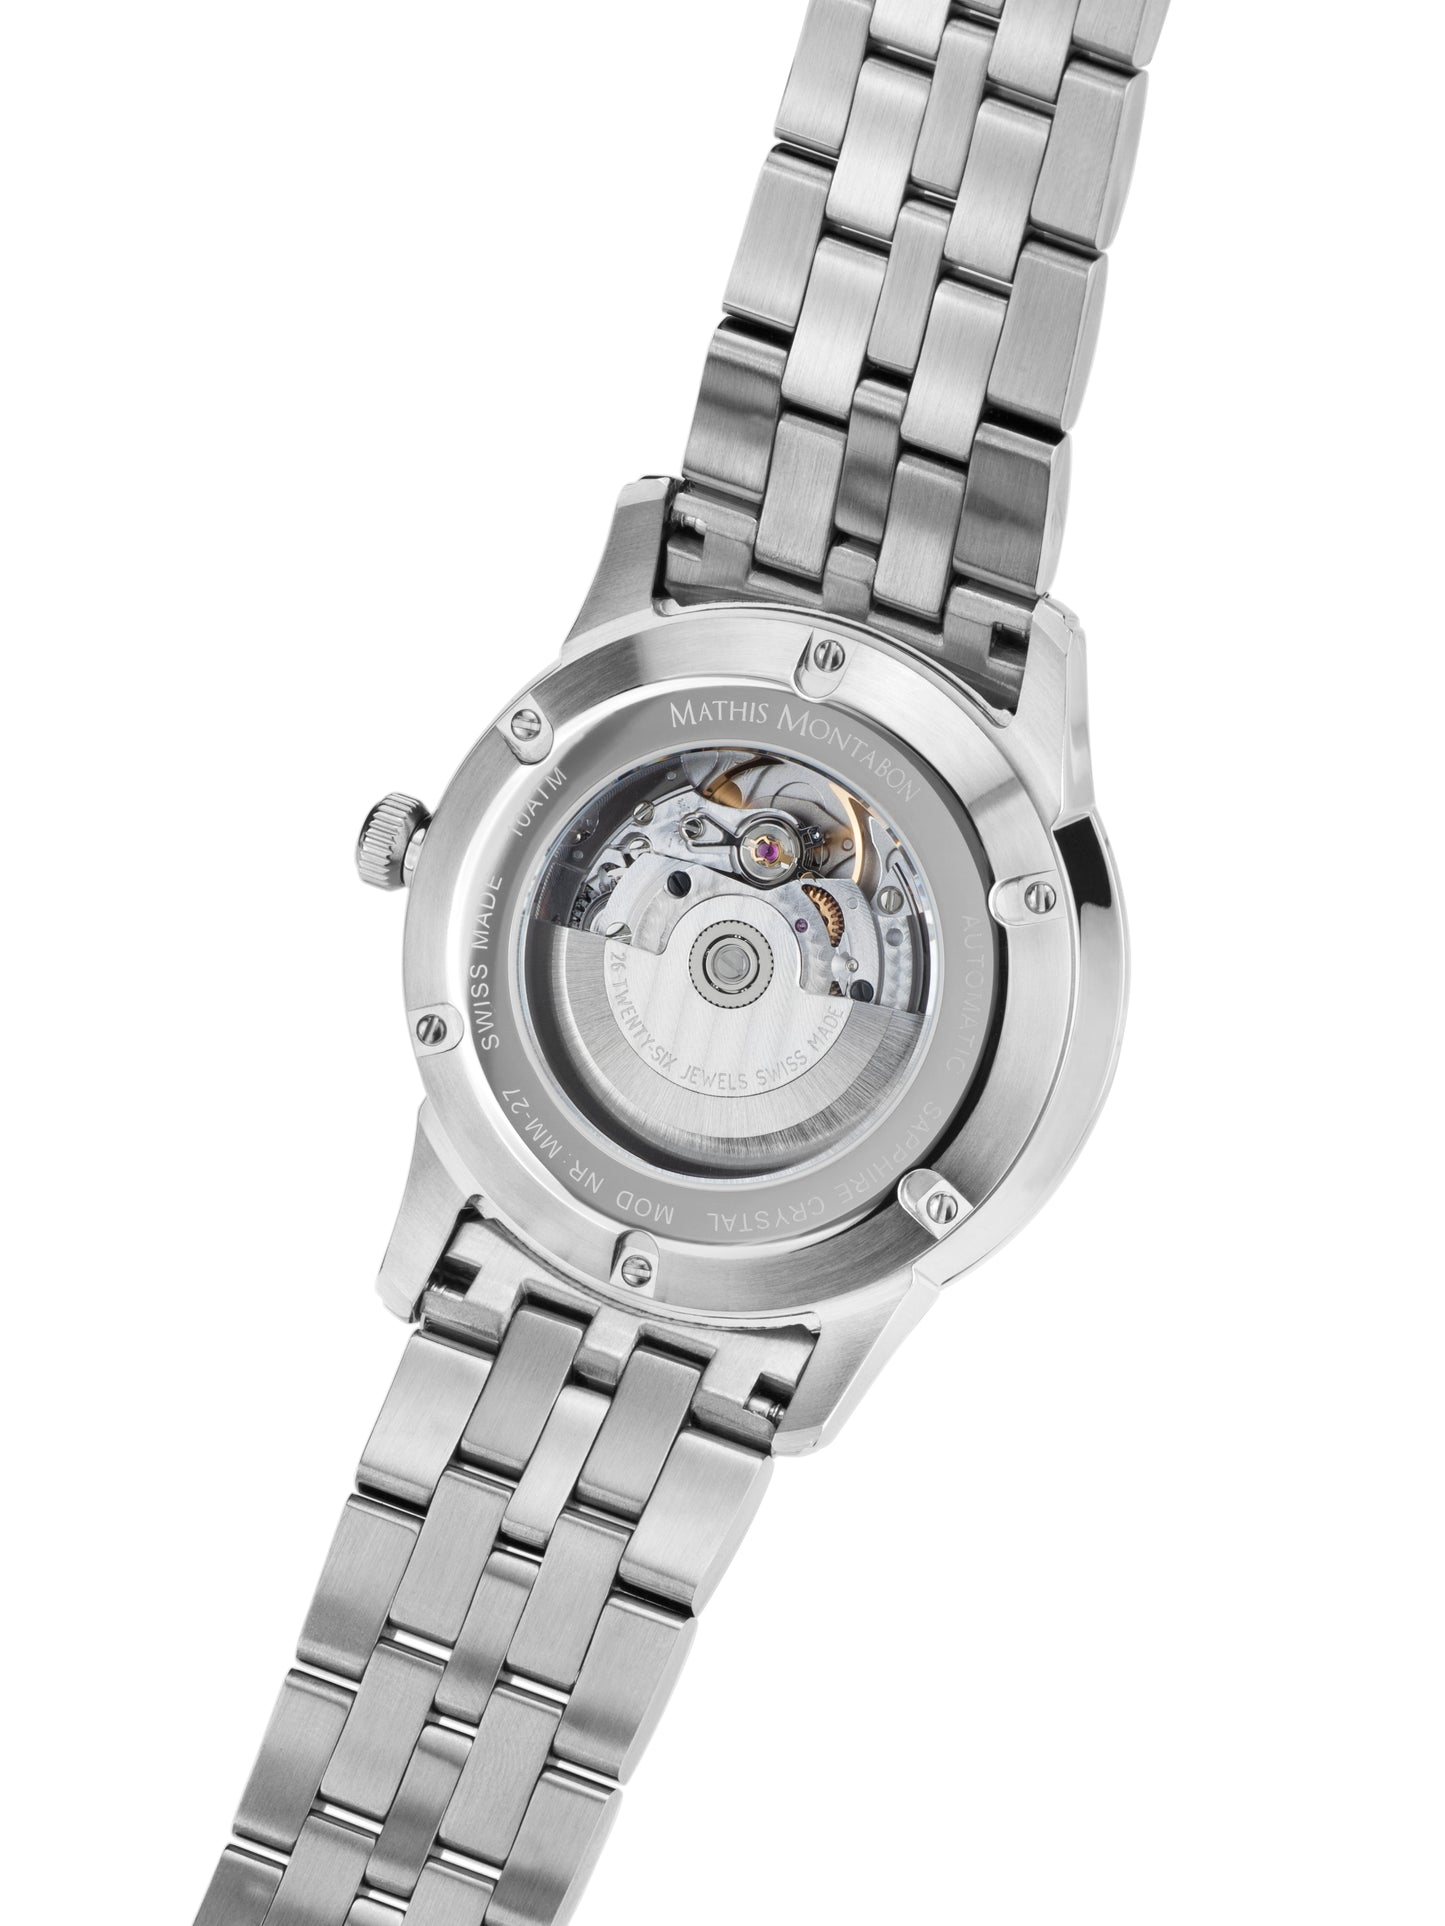 Automatic watches — Elégance de Suisse — Mathis Montabon — Stahl Schwarz